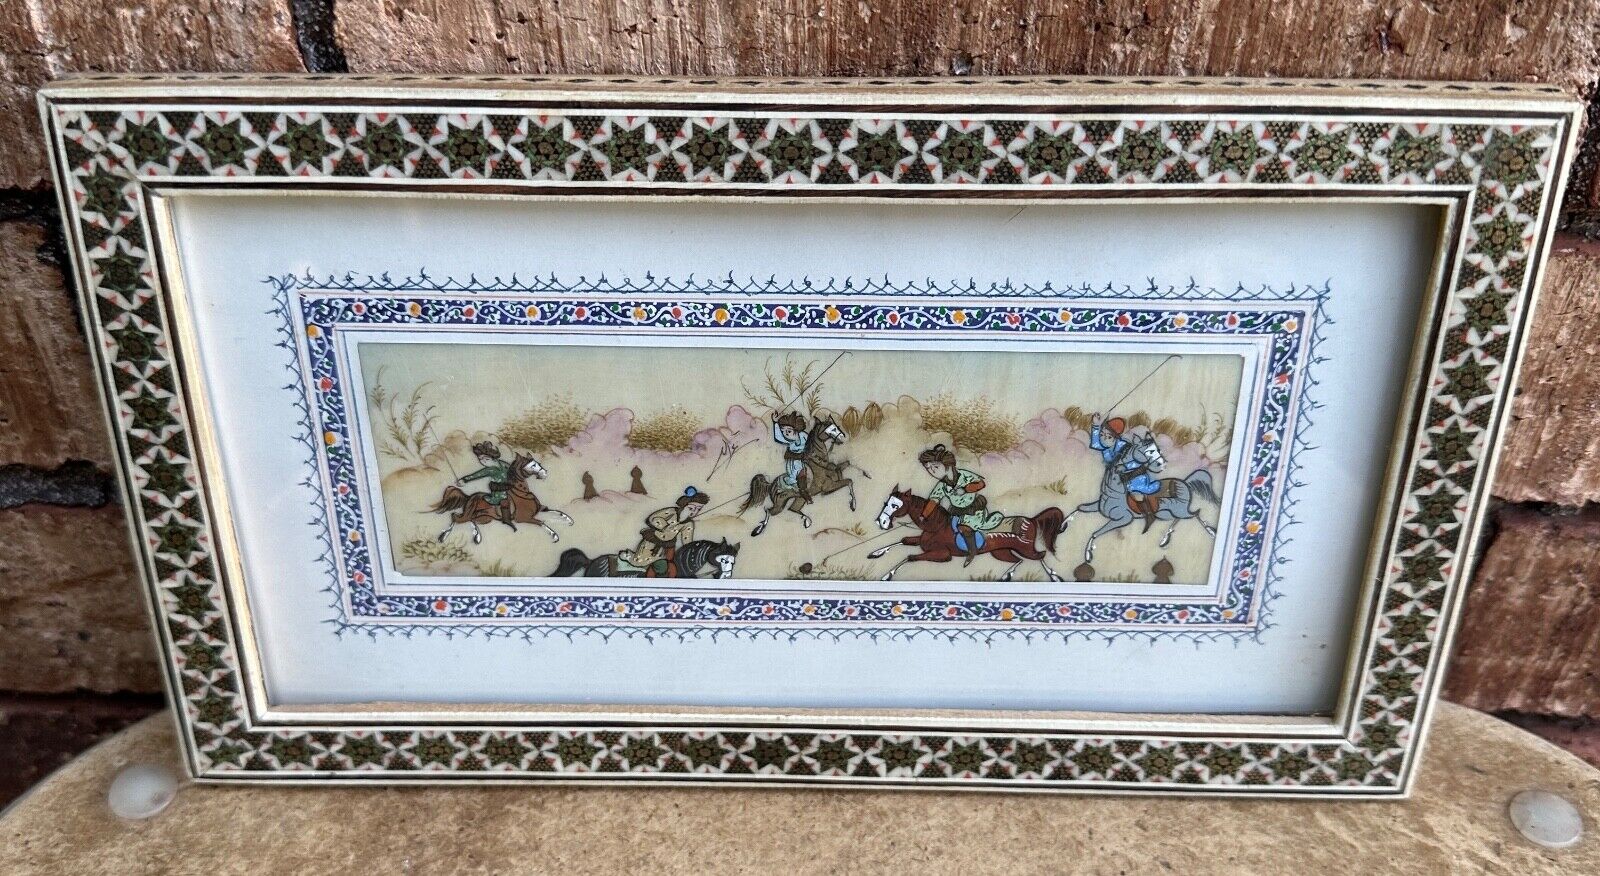 Painted Bone Art Horse Riders Khatam Frame Micro Mosaic Persian Iran